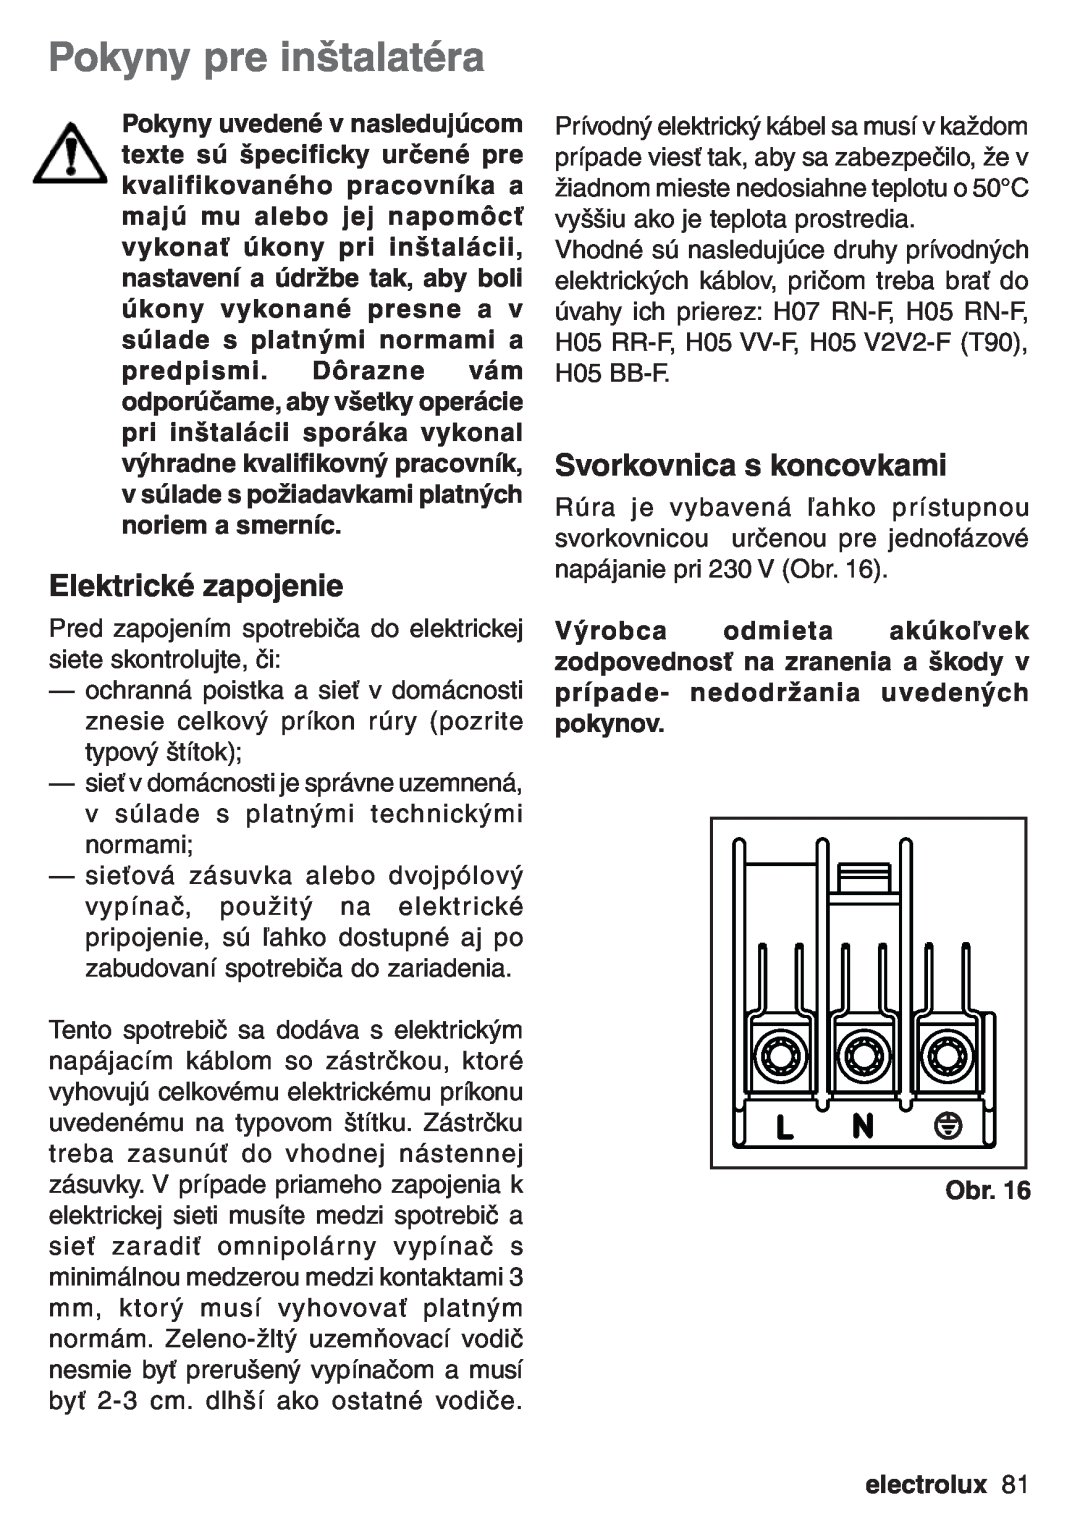 Electrolux EOB 53003 user manual Pokyny pre inštalatéra, Elektrické zapojenie, Svorkovnica s koncovkami, electrolux 